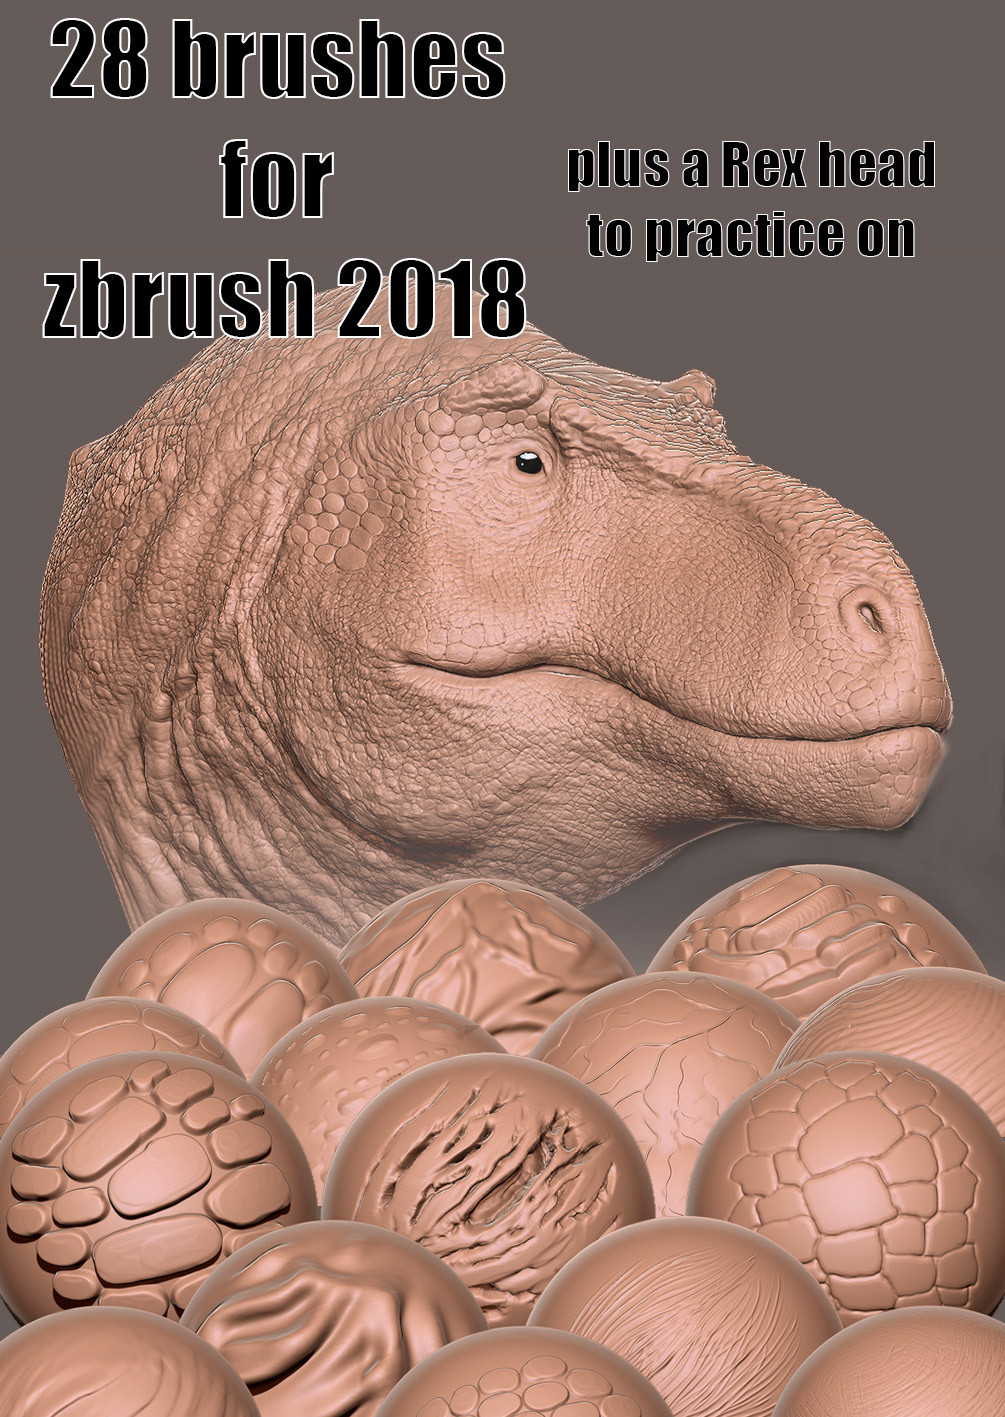 zbrush 2018 purchase